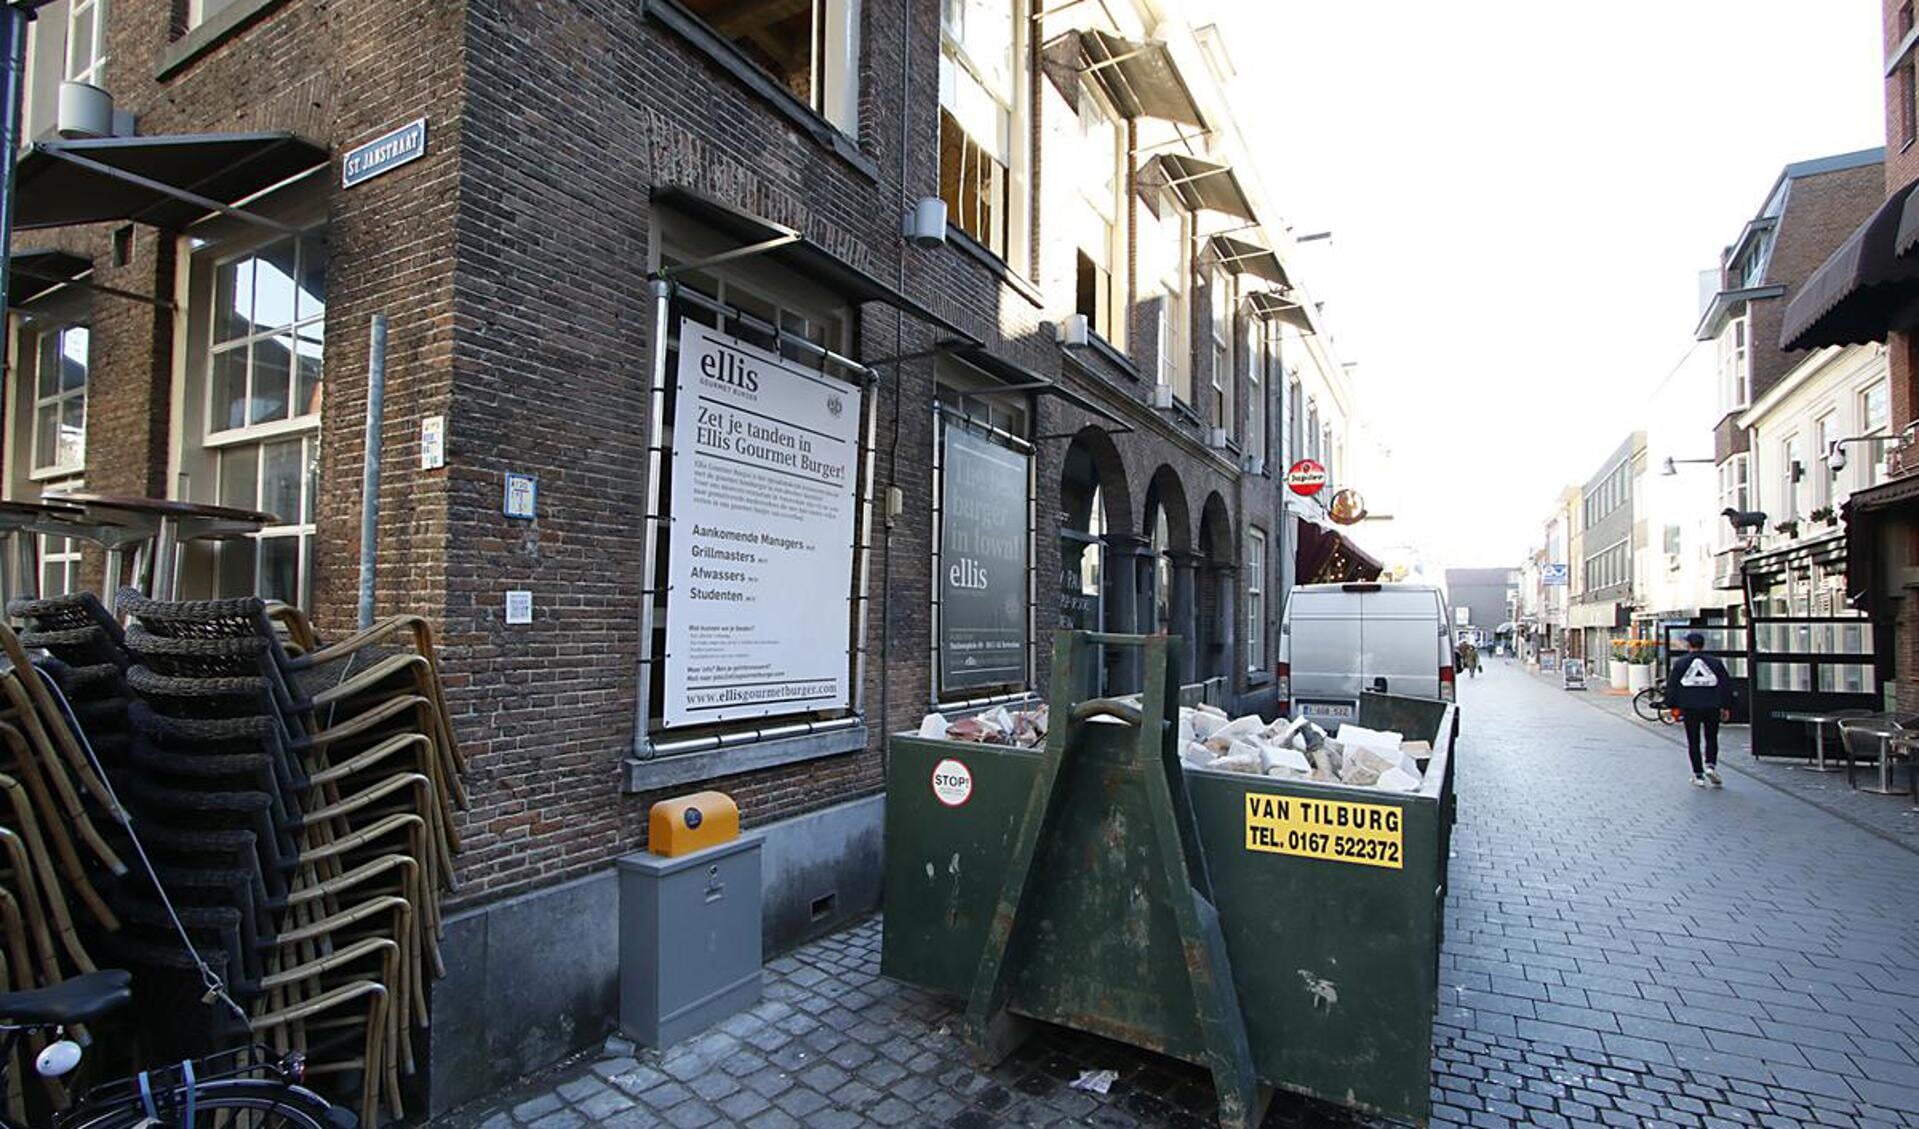 De van oorsprong Belgische burgerketen Ellis Gourmet Burger opent aan het begin van de lente een vestiging in Breda.